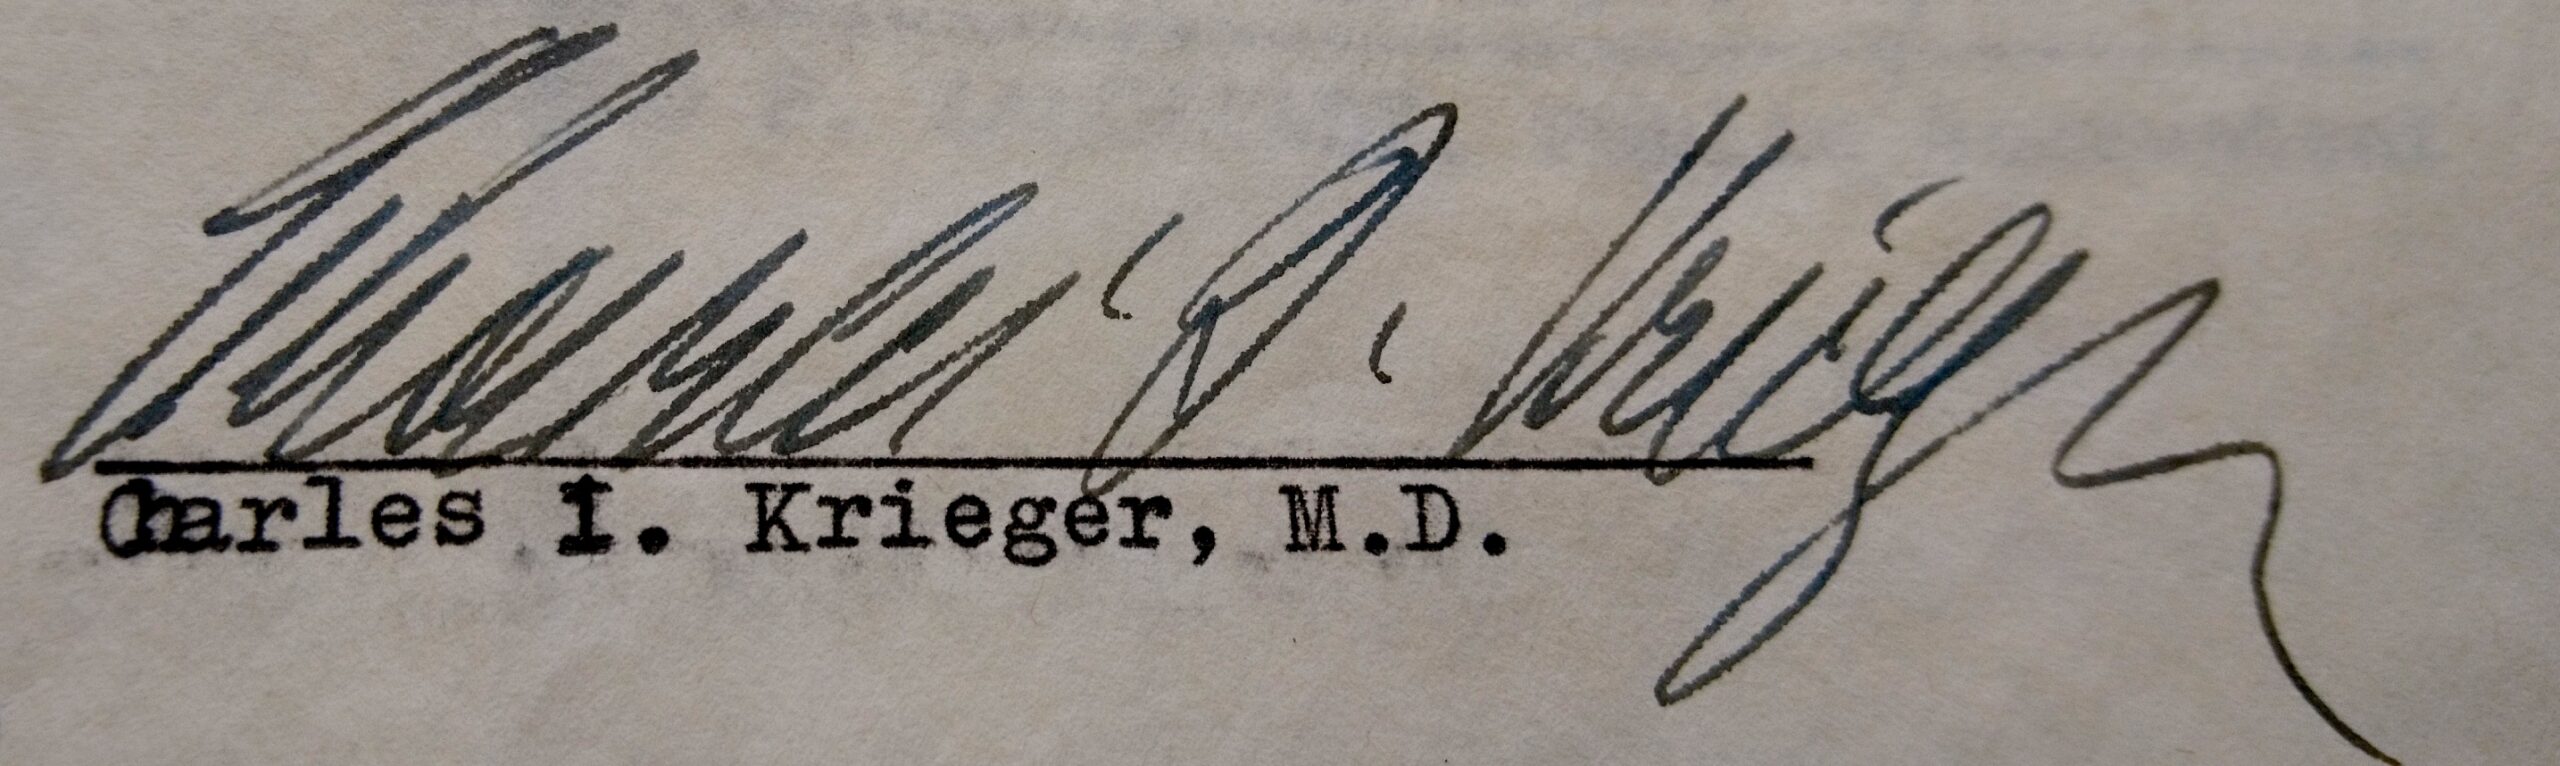 Signature, 1957, Source Entschädigungsbehörde Berlin